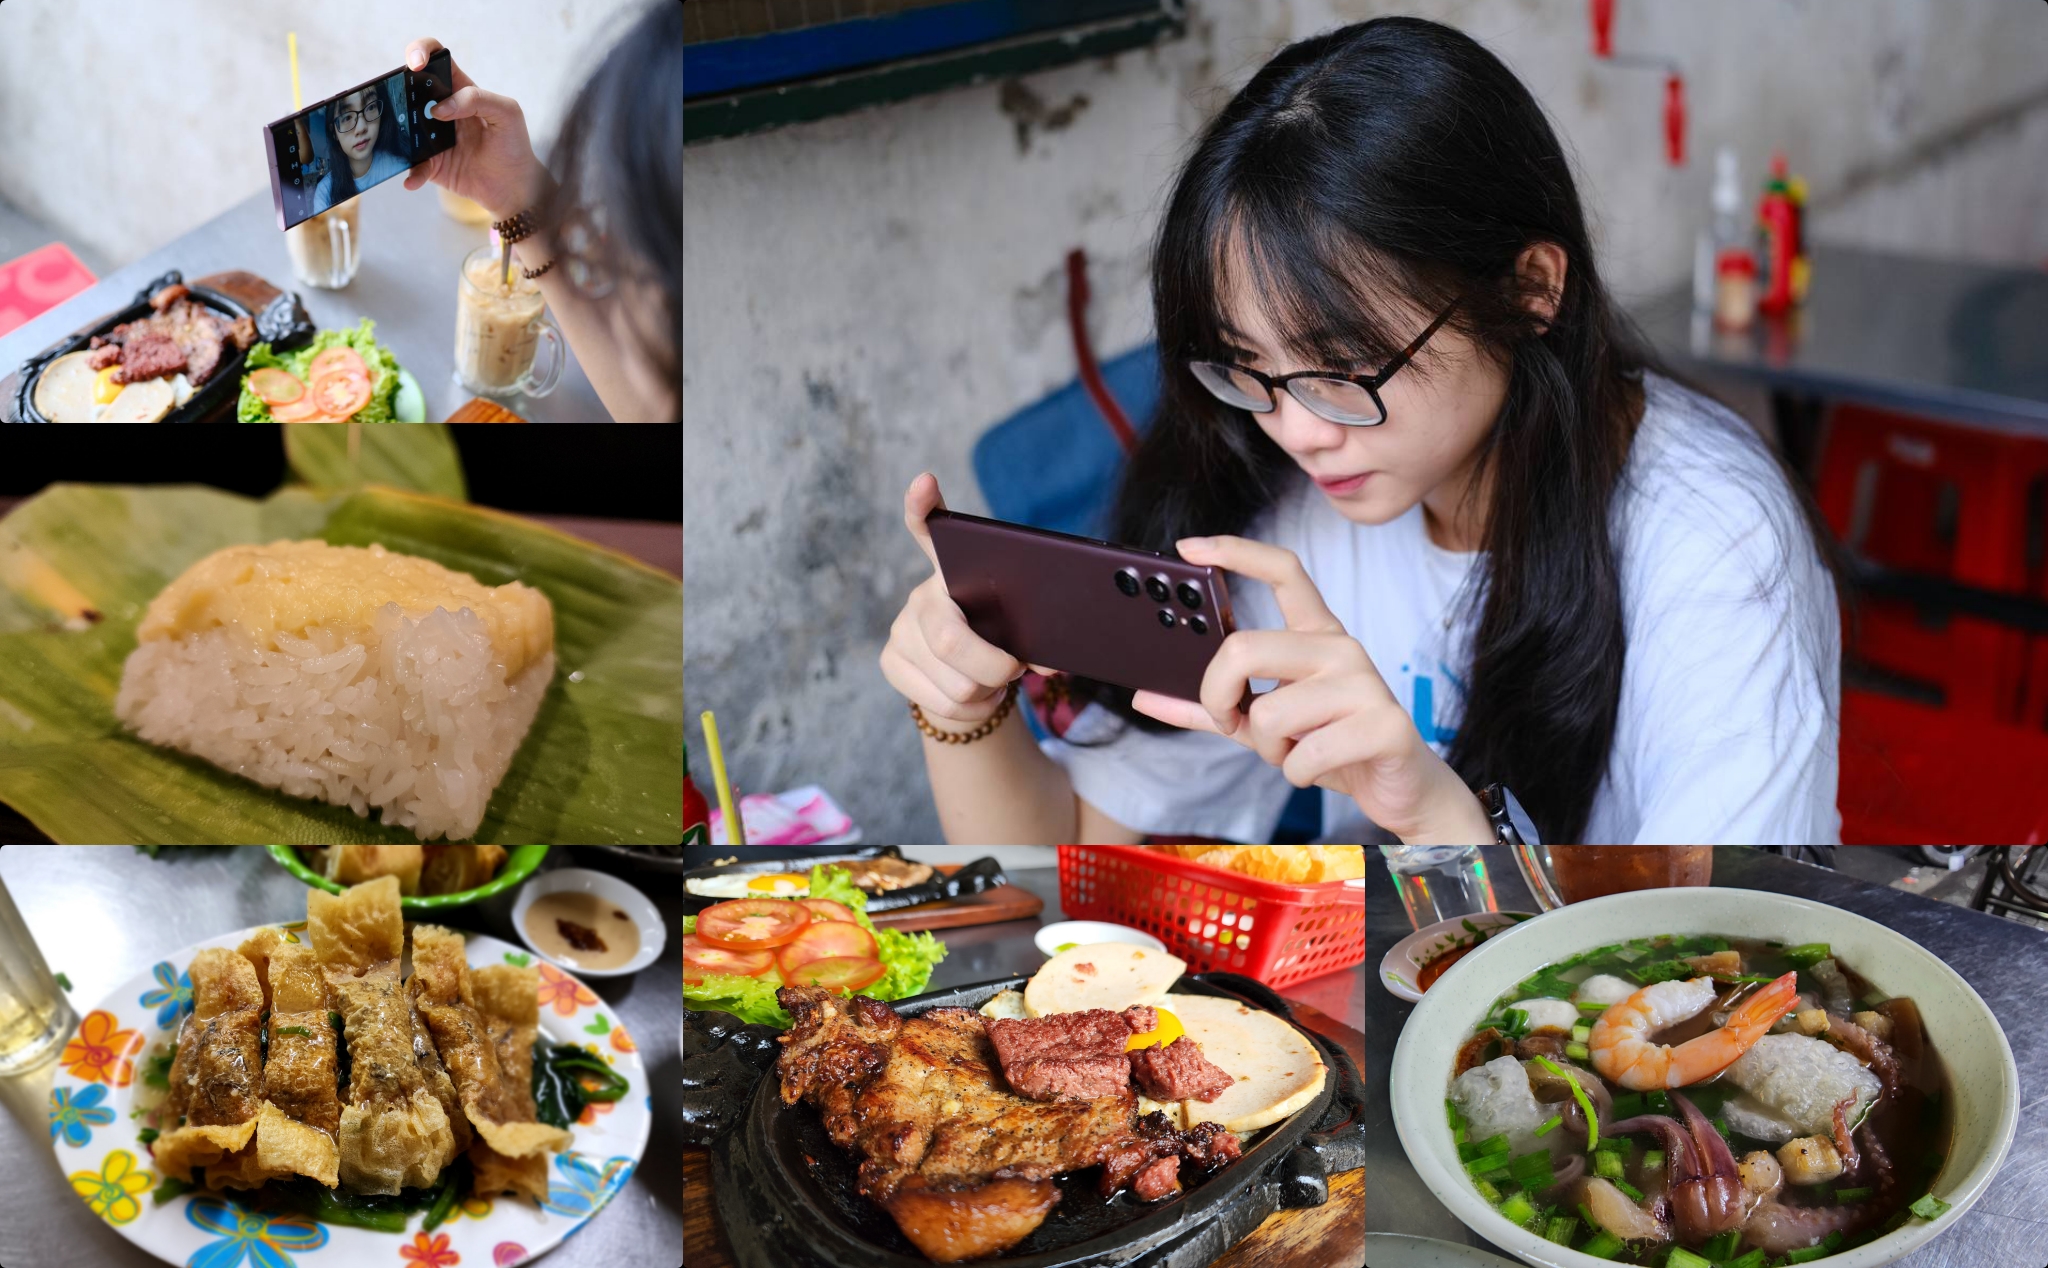 Giới thiệu 5 địa điểm ăn uống nổi tiếng của người Hoa ở khu Chợ Lớn